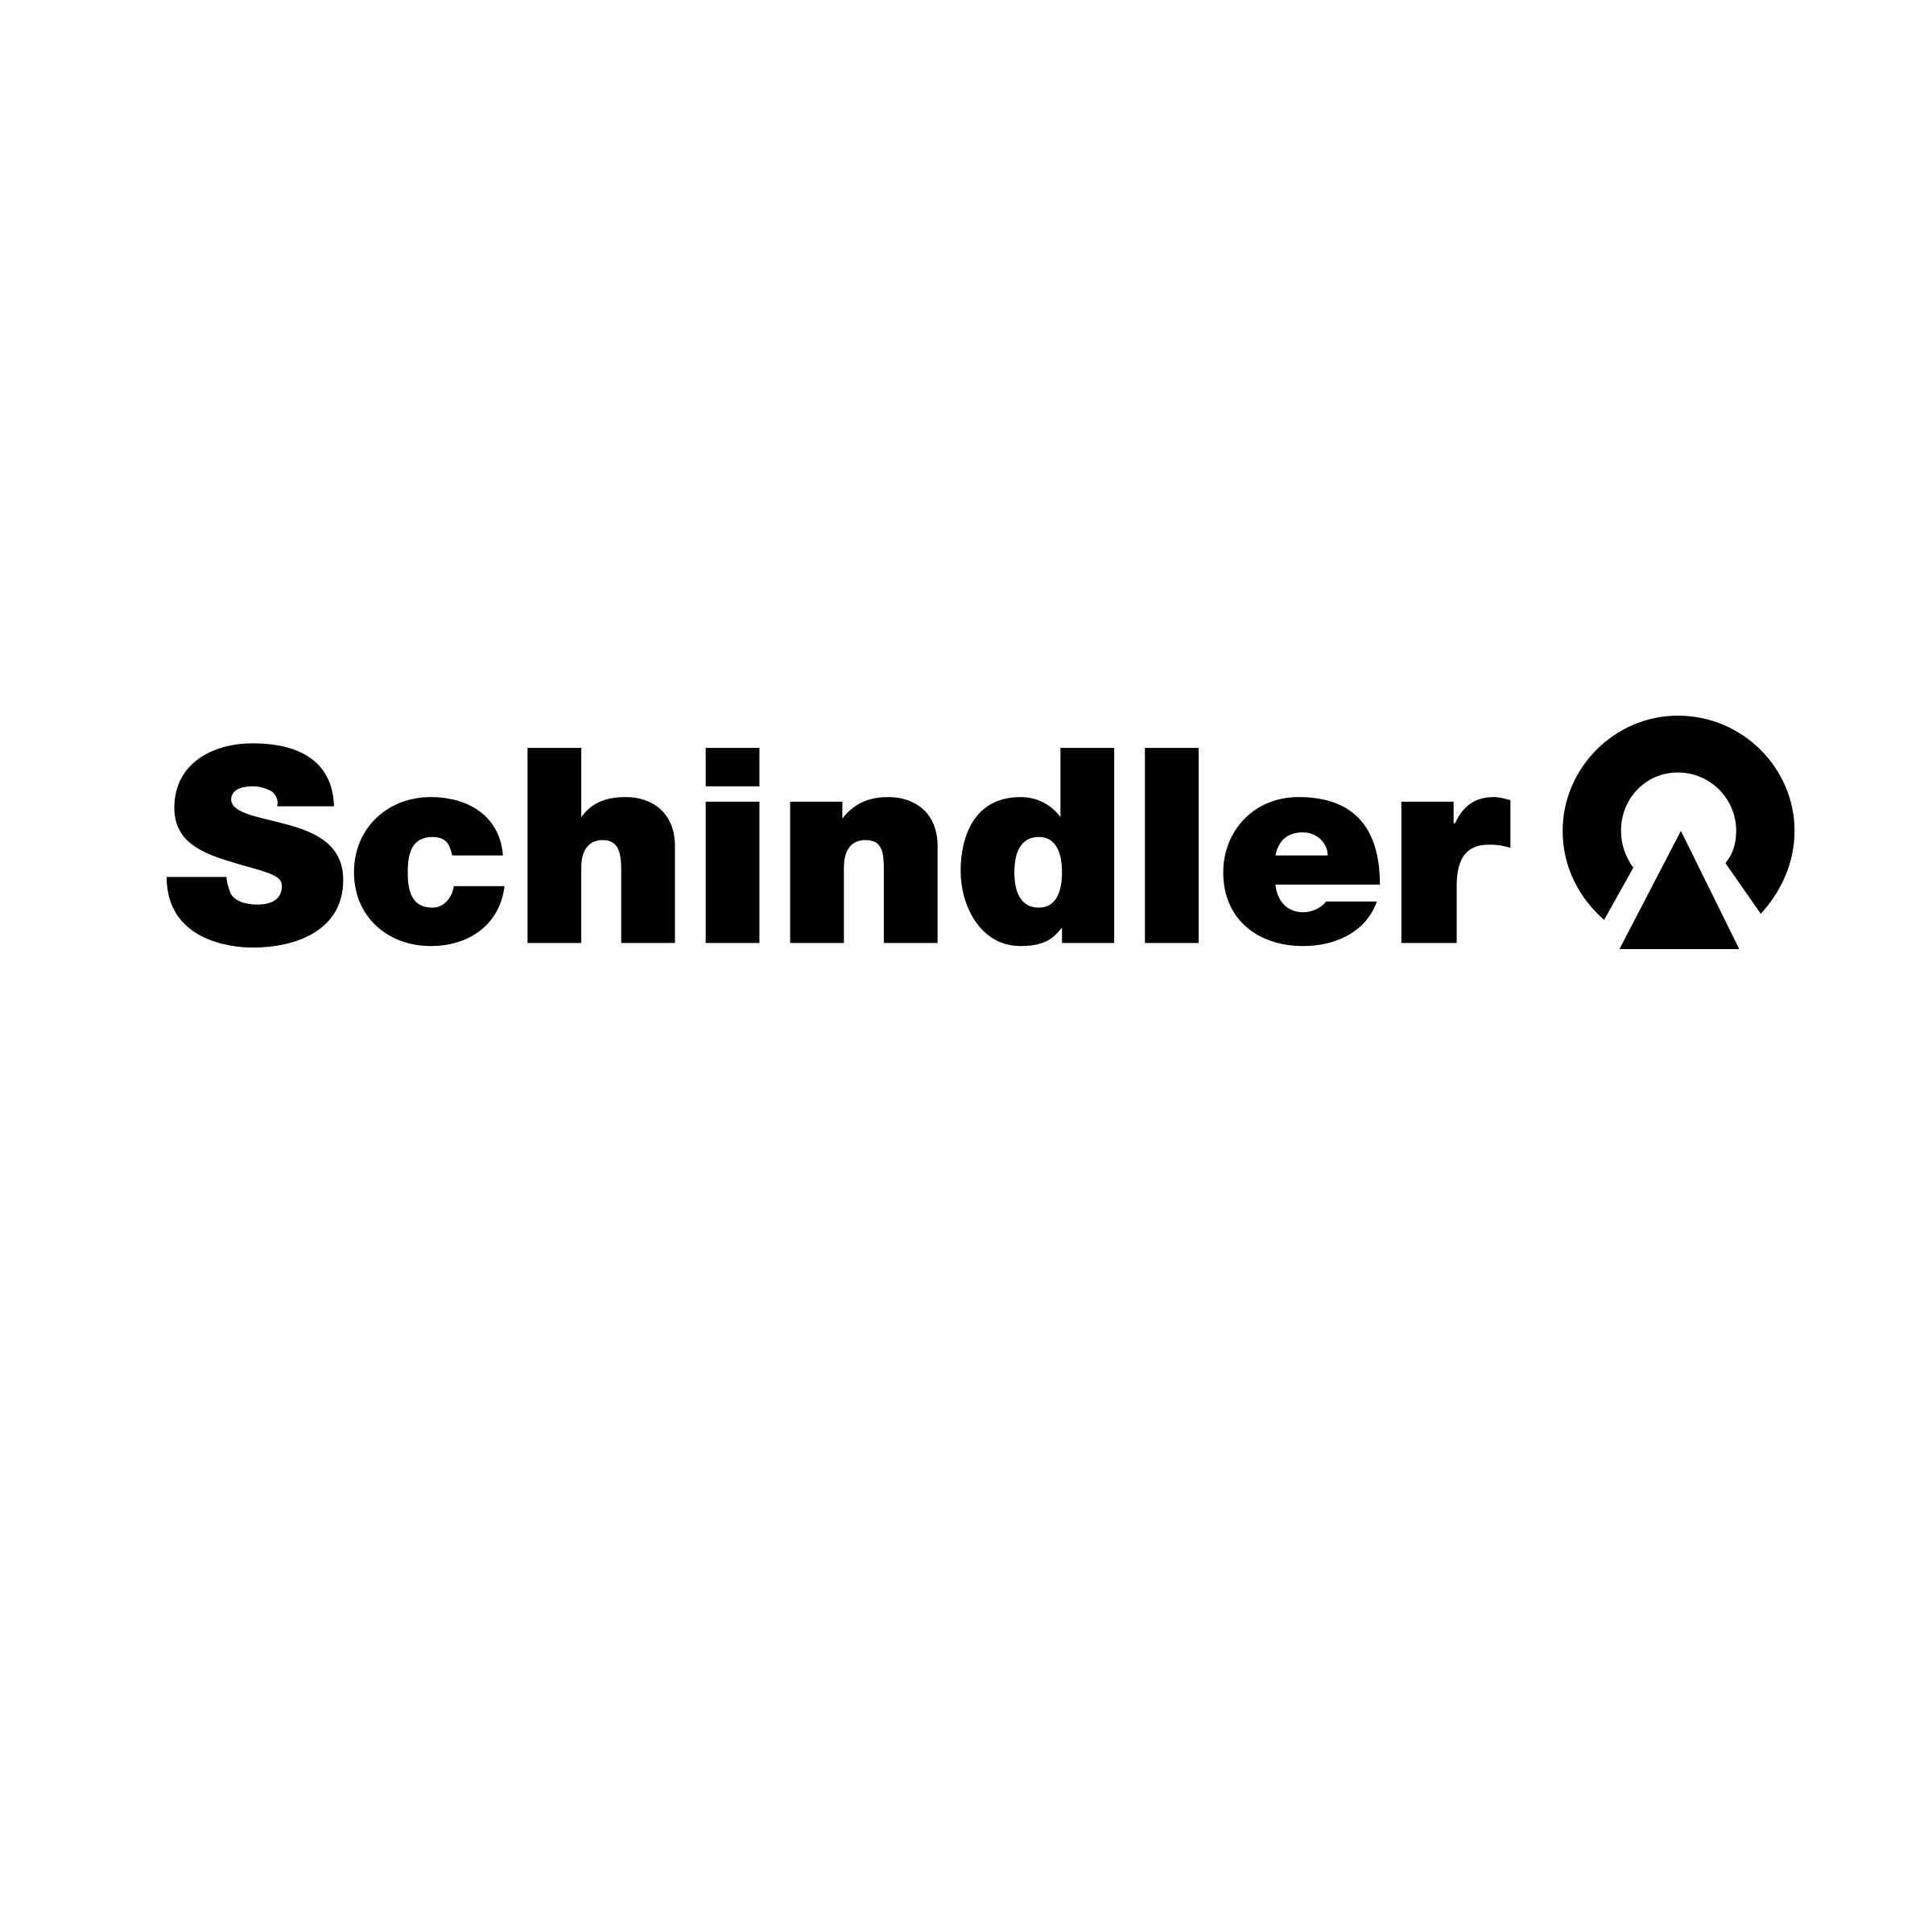 Schindler Logo - Schindler Logo PNG Transparent & SVG Vector - Freebie Supply